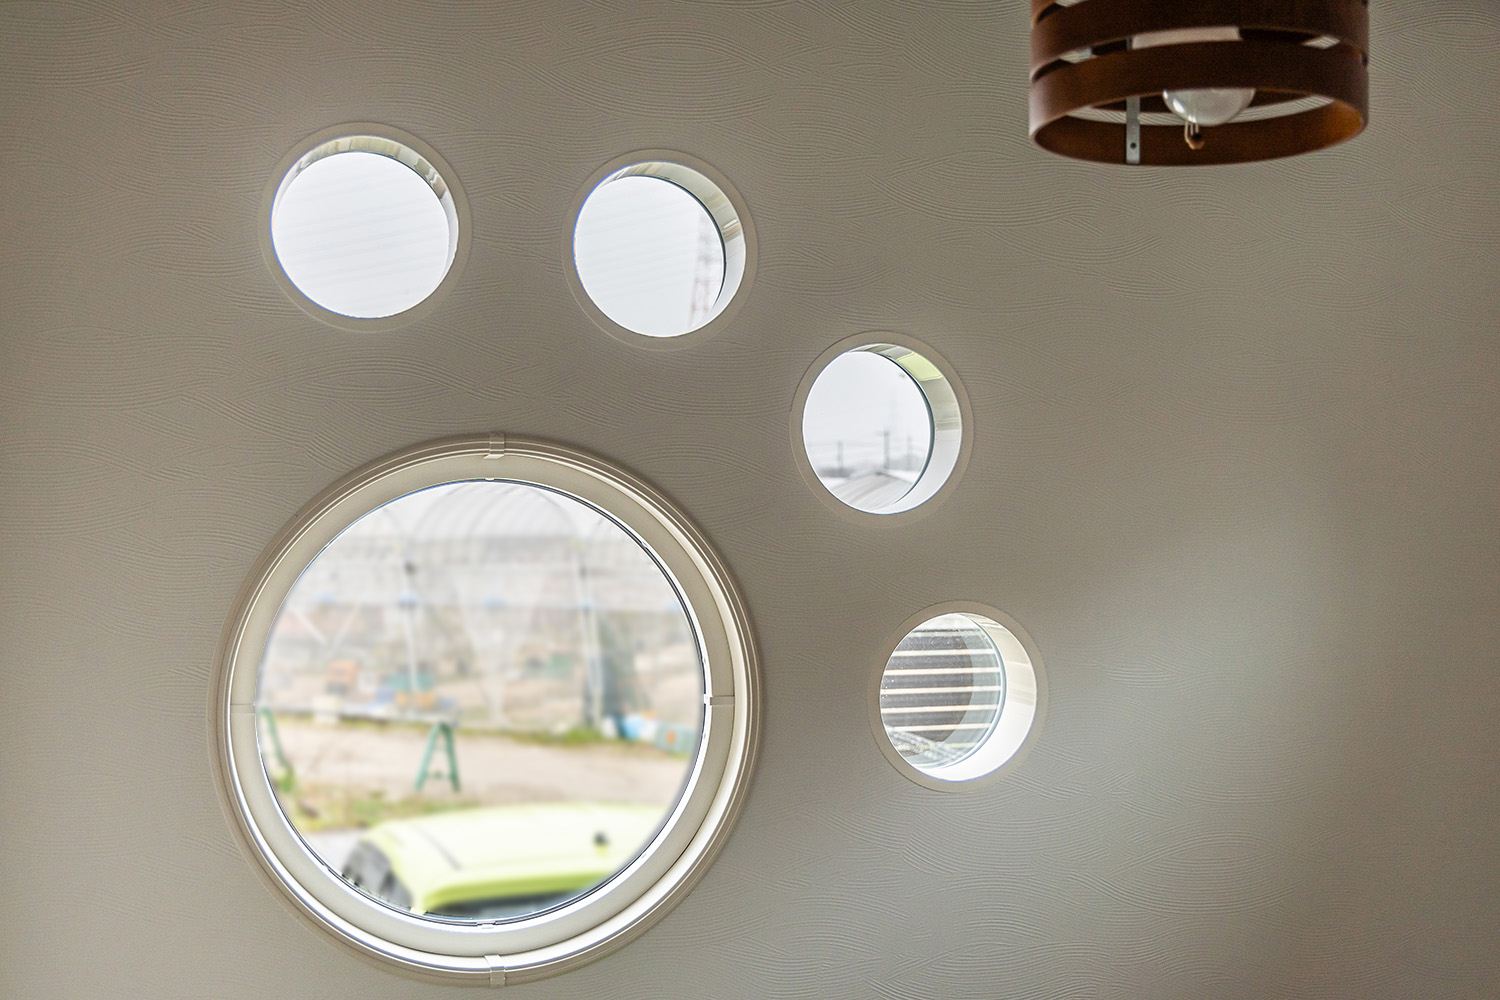 市松張りの琉球畳が洗練された印象を与える和室。<br />
可愛い肉球型の窓を設置し、遊び心をプラスしました。